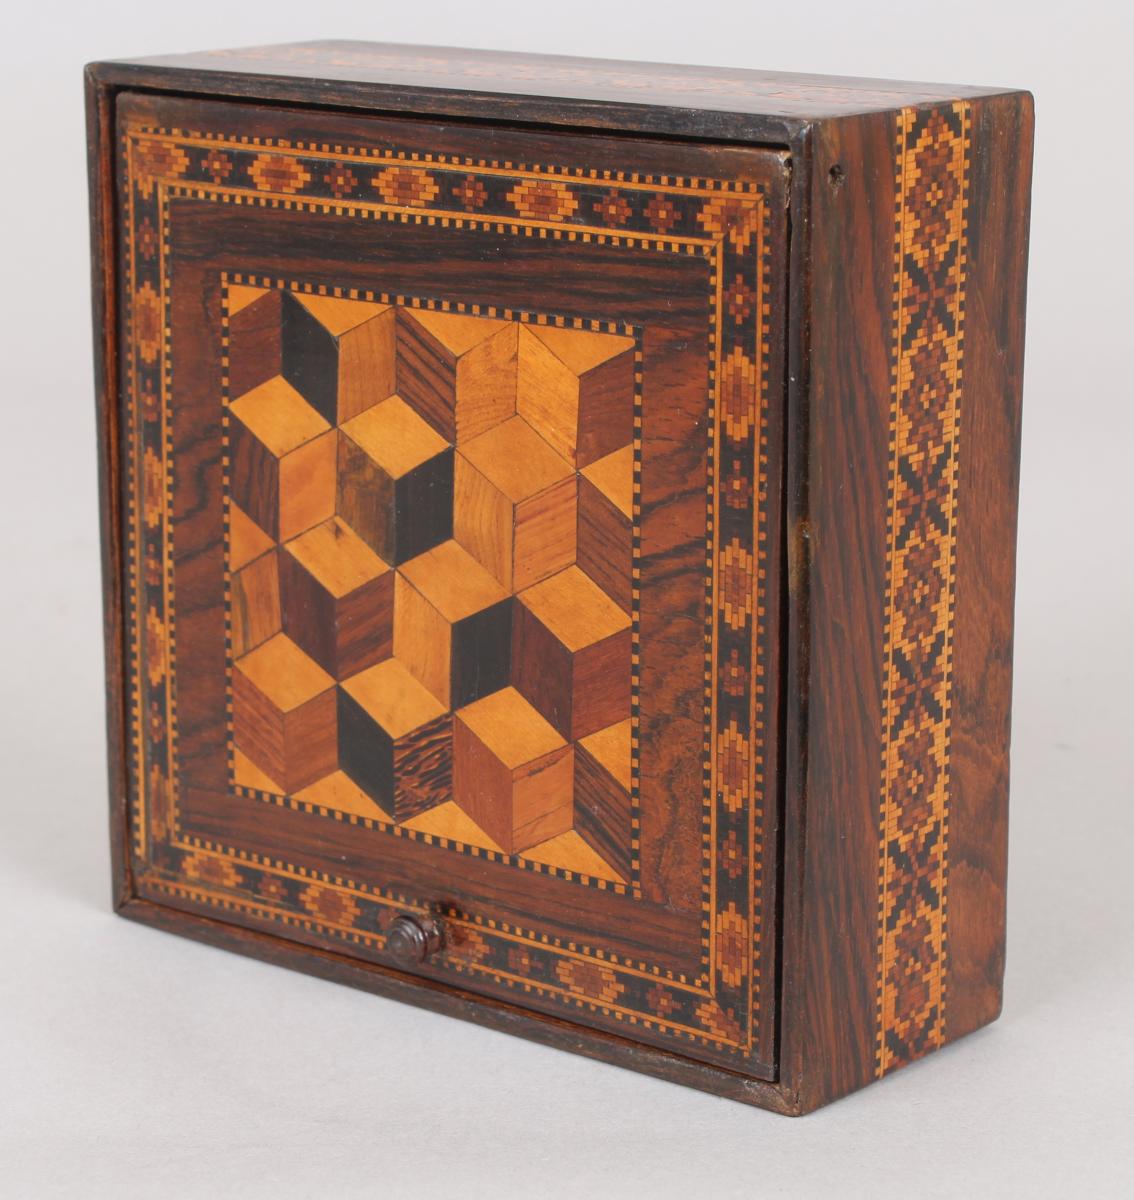 Victorian Tunbridge-ware square box